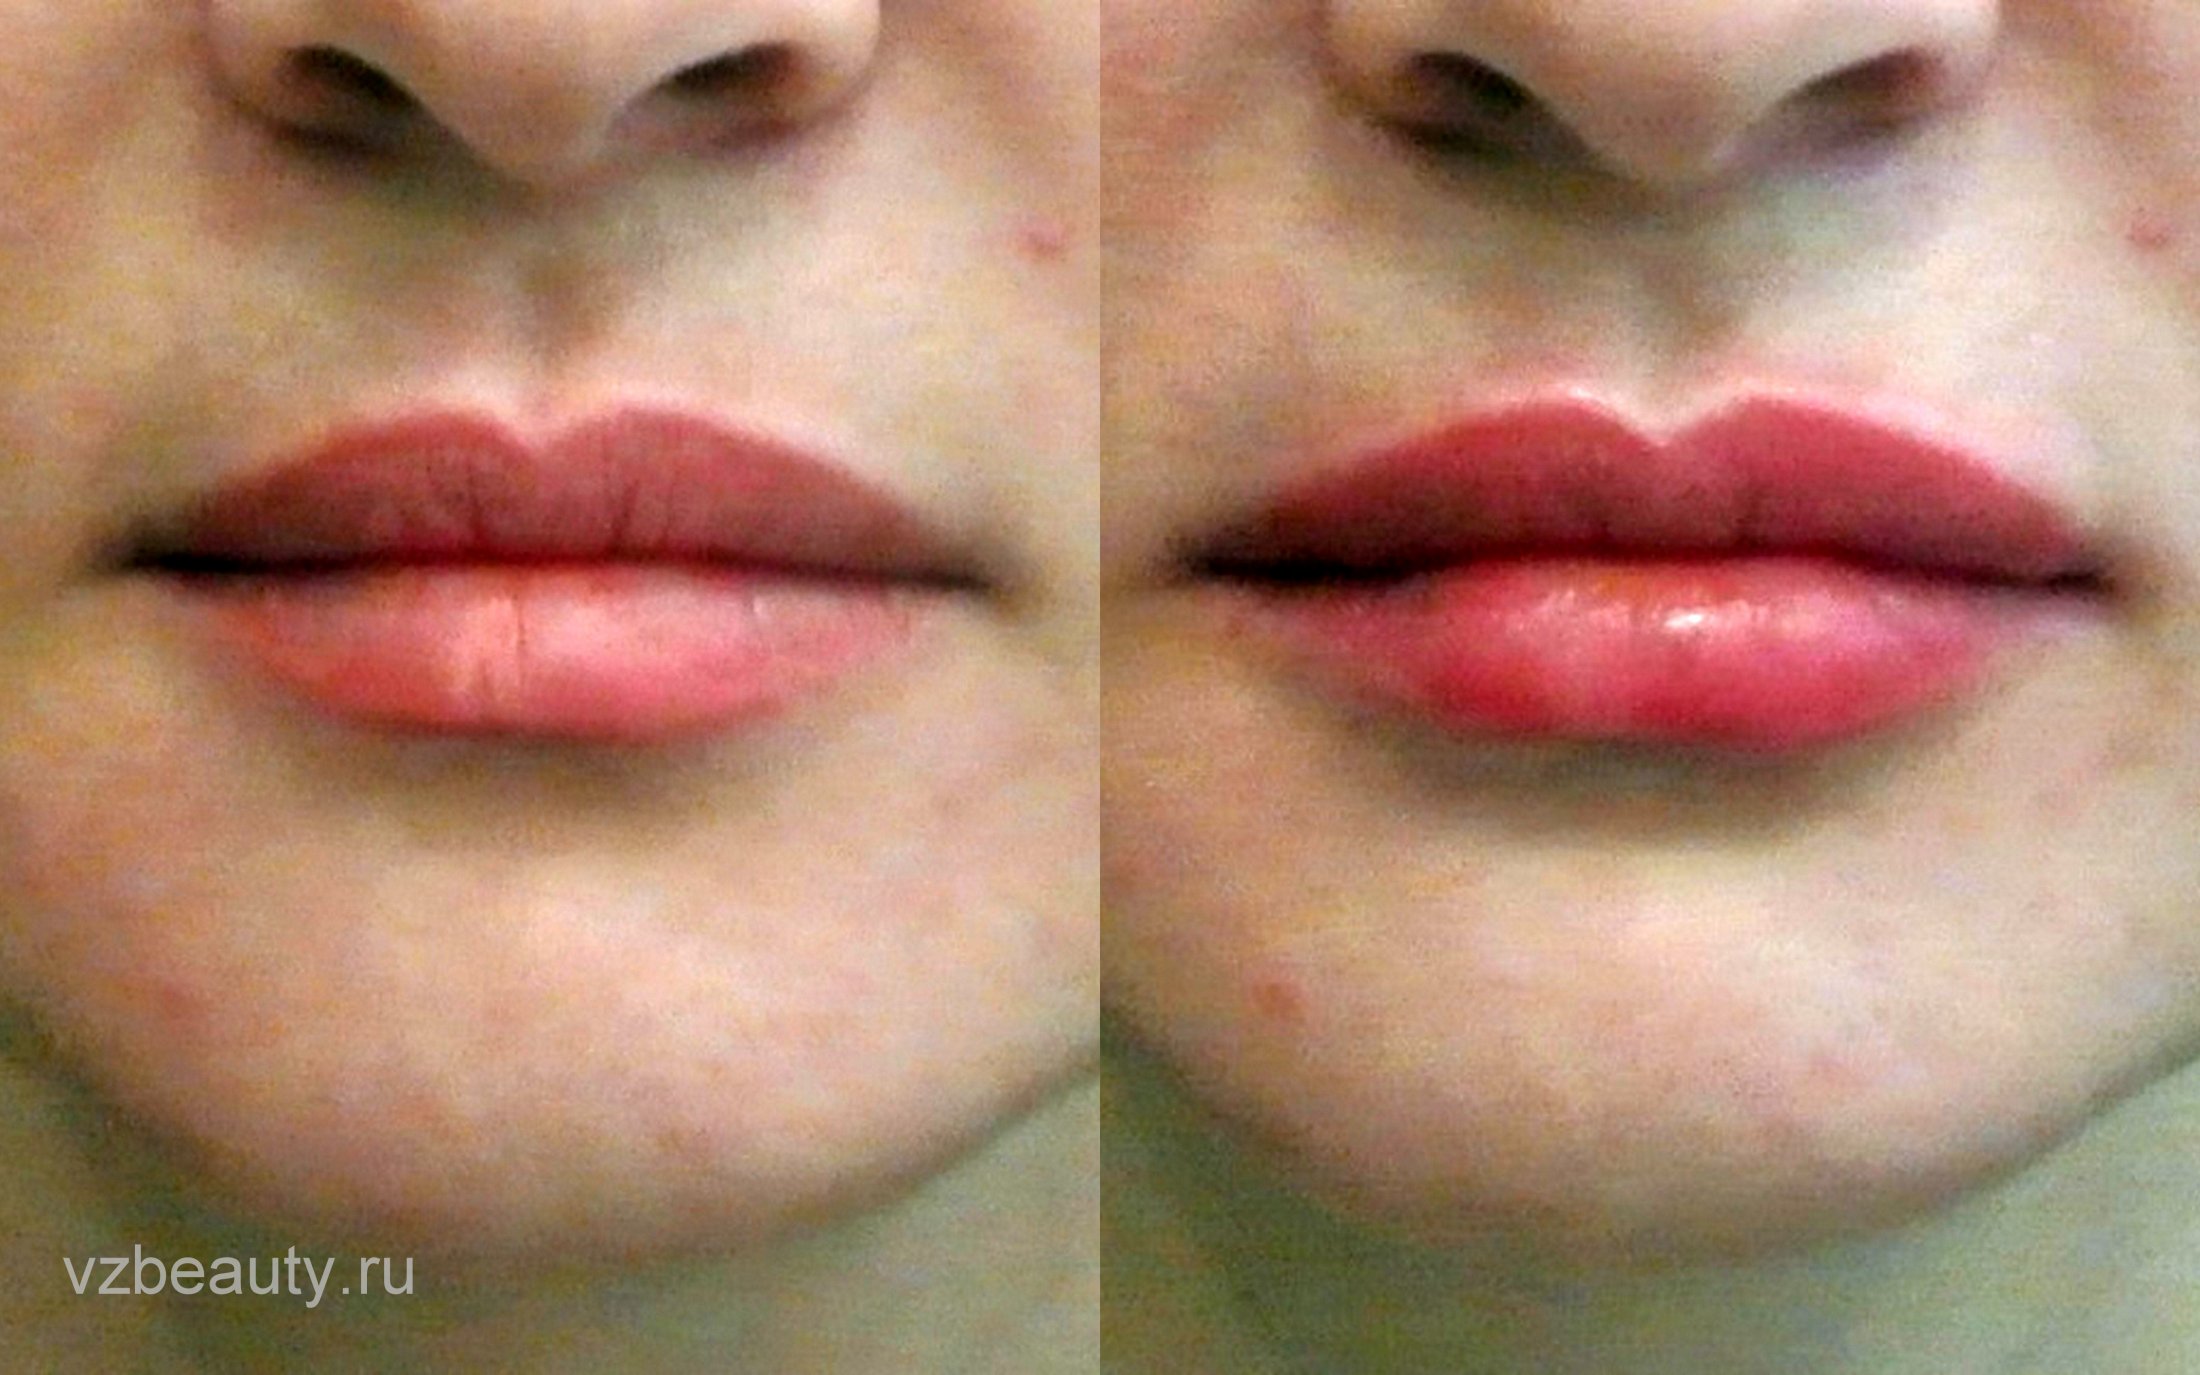 Увлажнение губ до и после. Гиалуронка в губы для увлажнения. Увлажненные губы до и после.